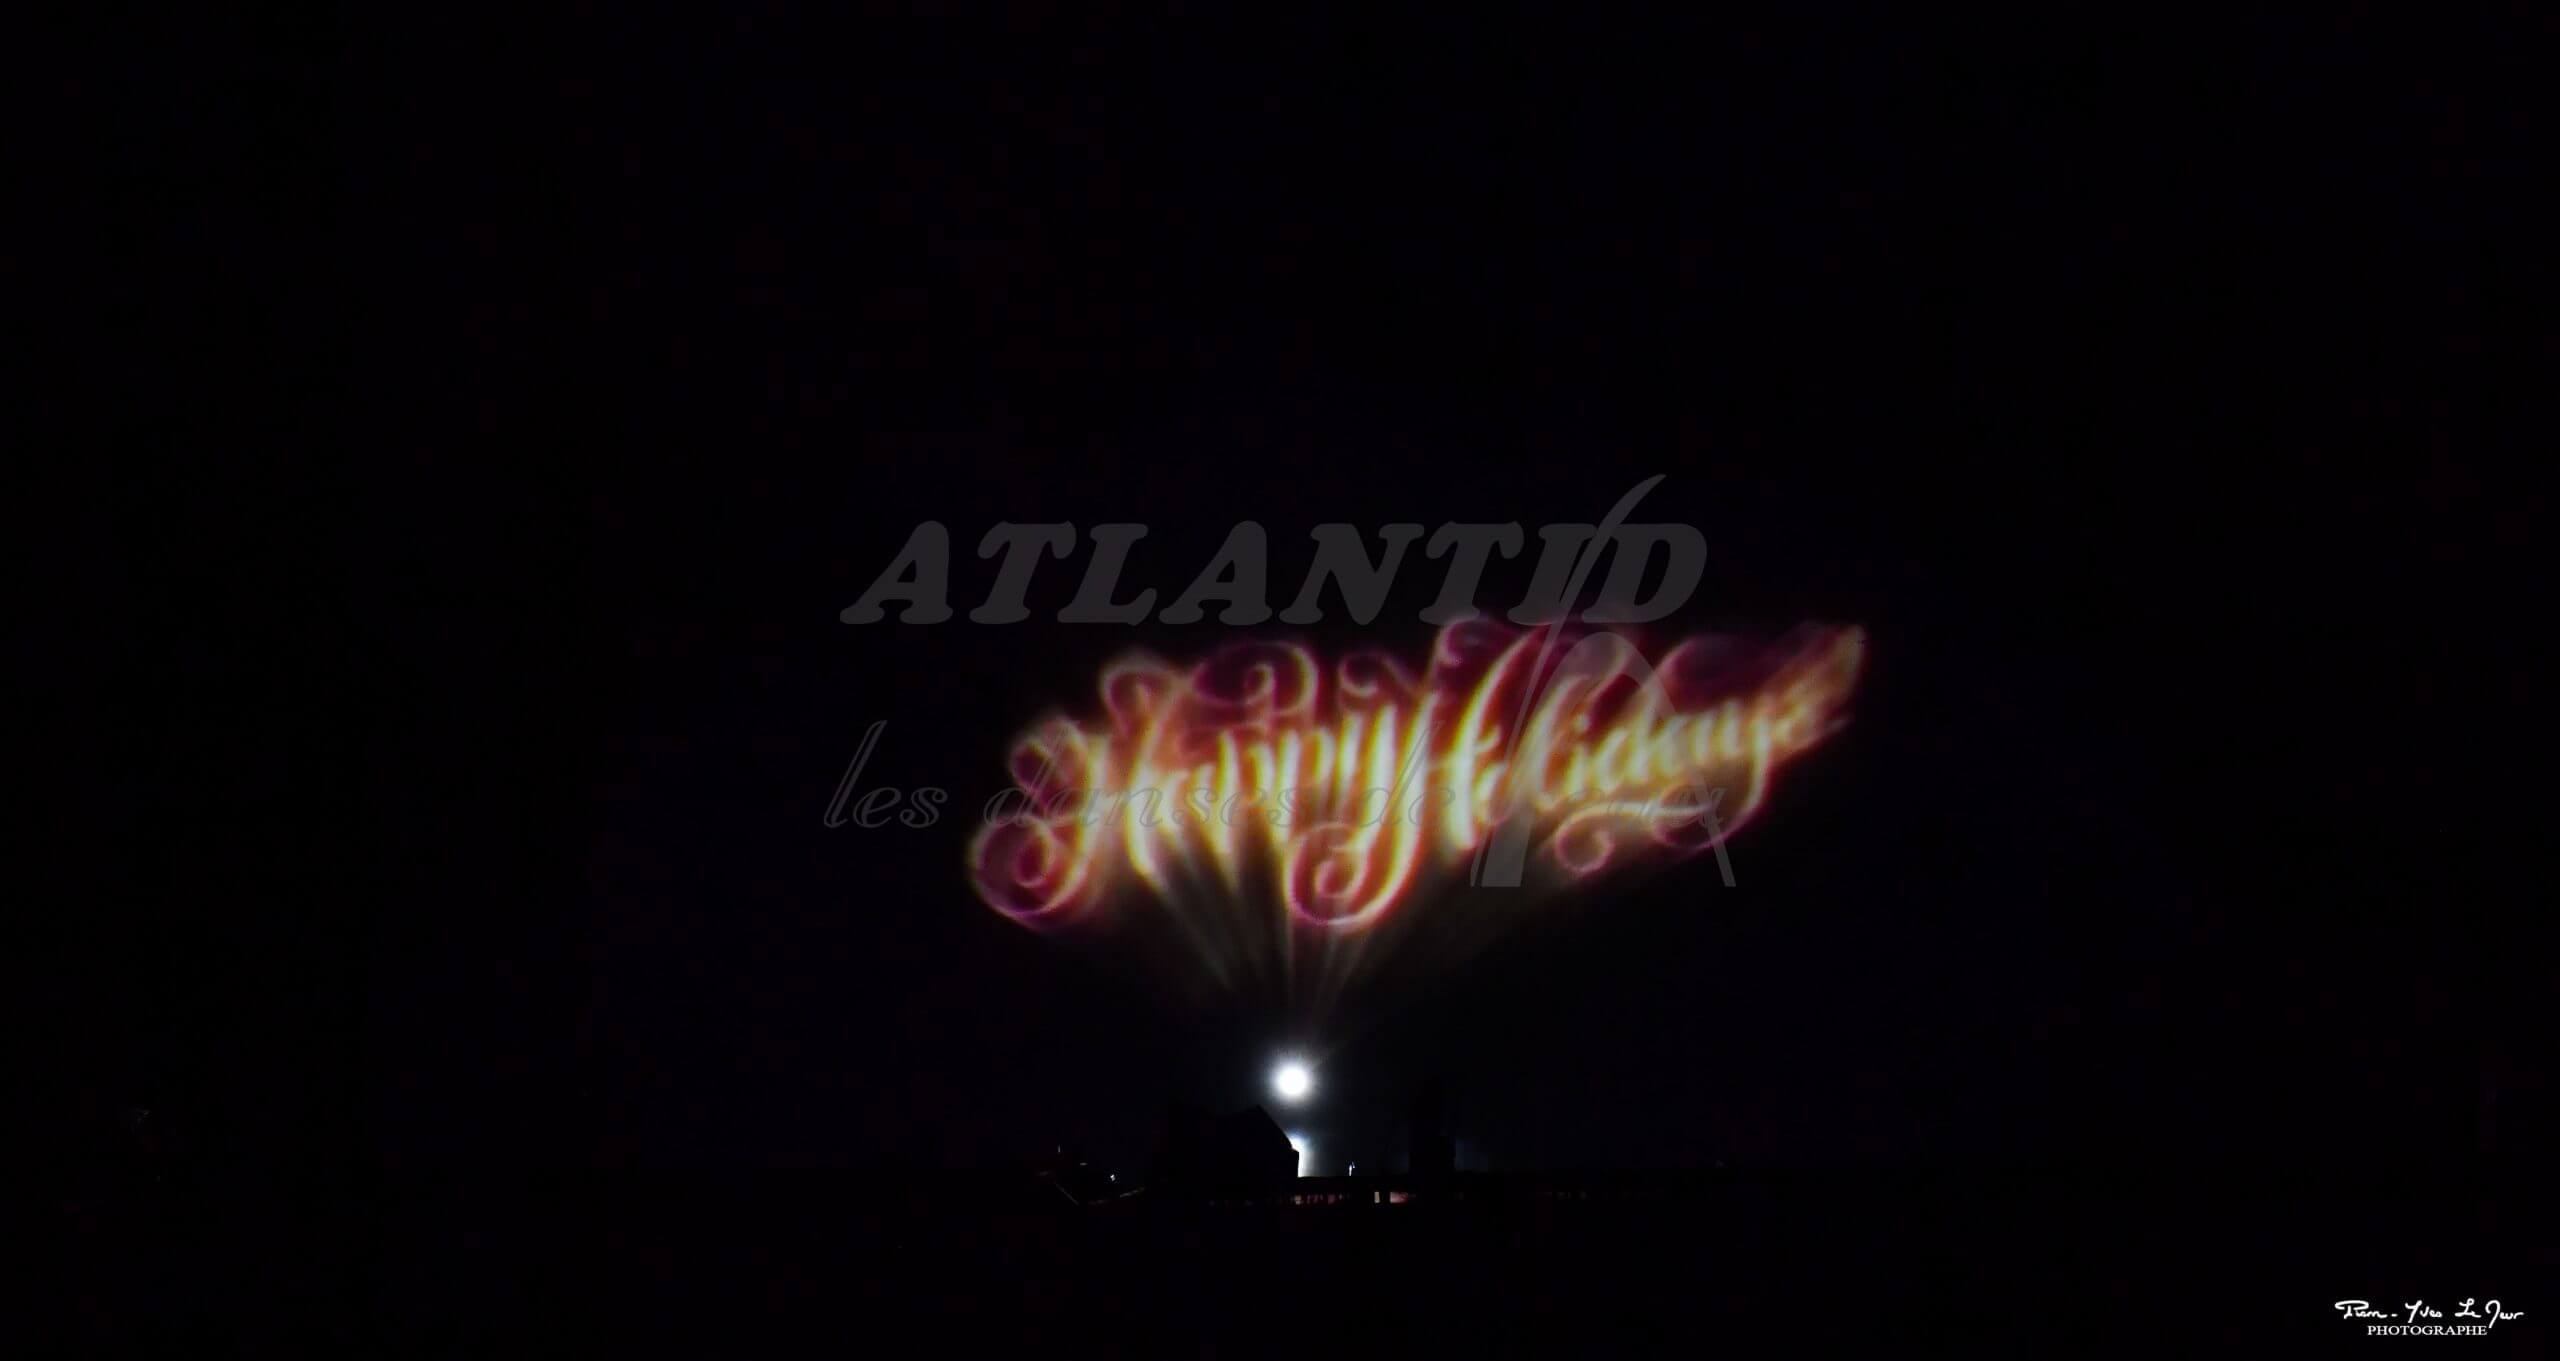 Atlantid - Proyección de texto de felices fiestas en el agua